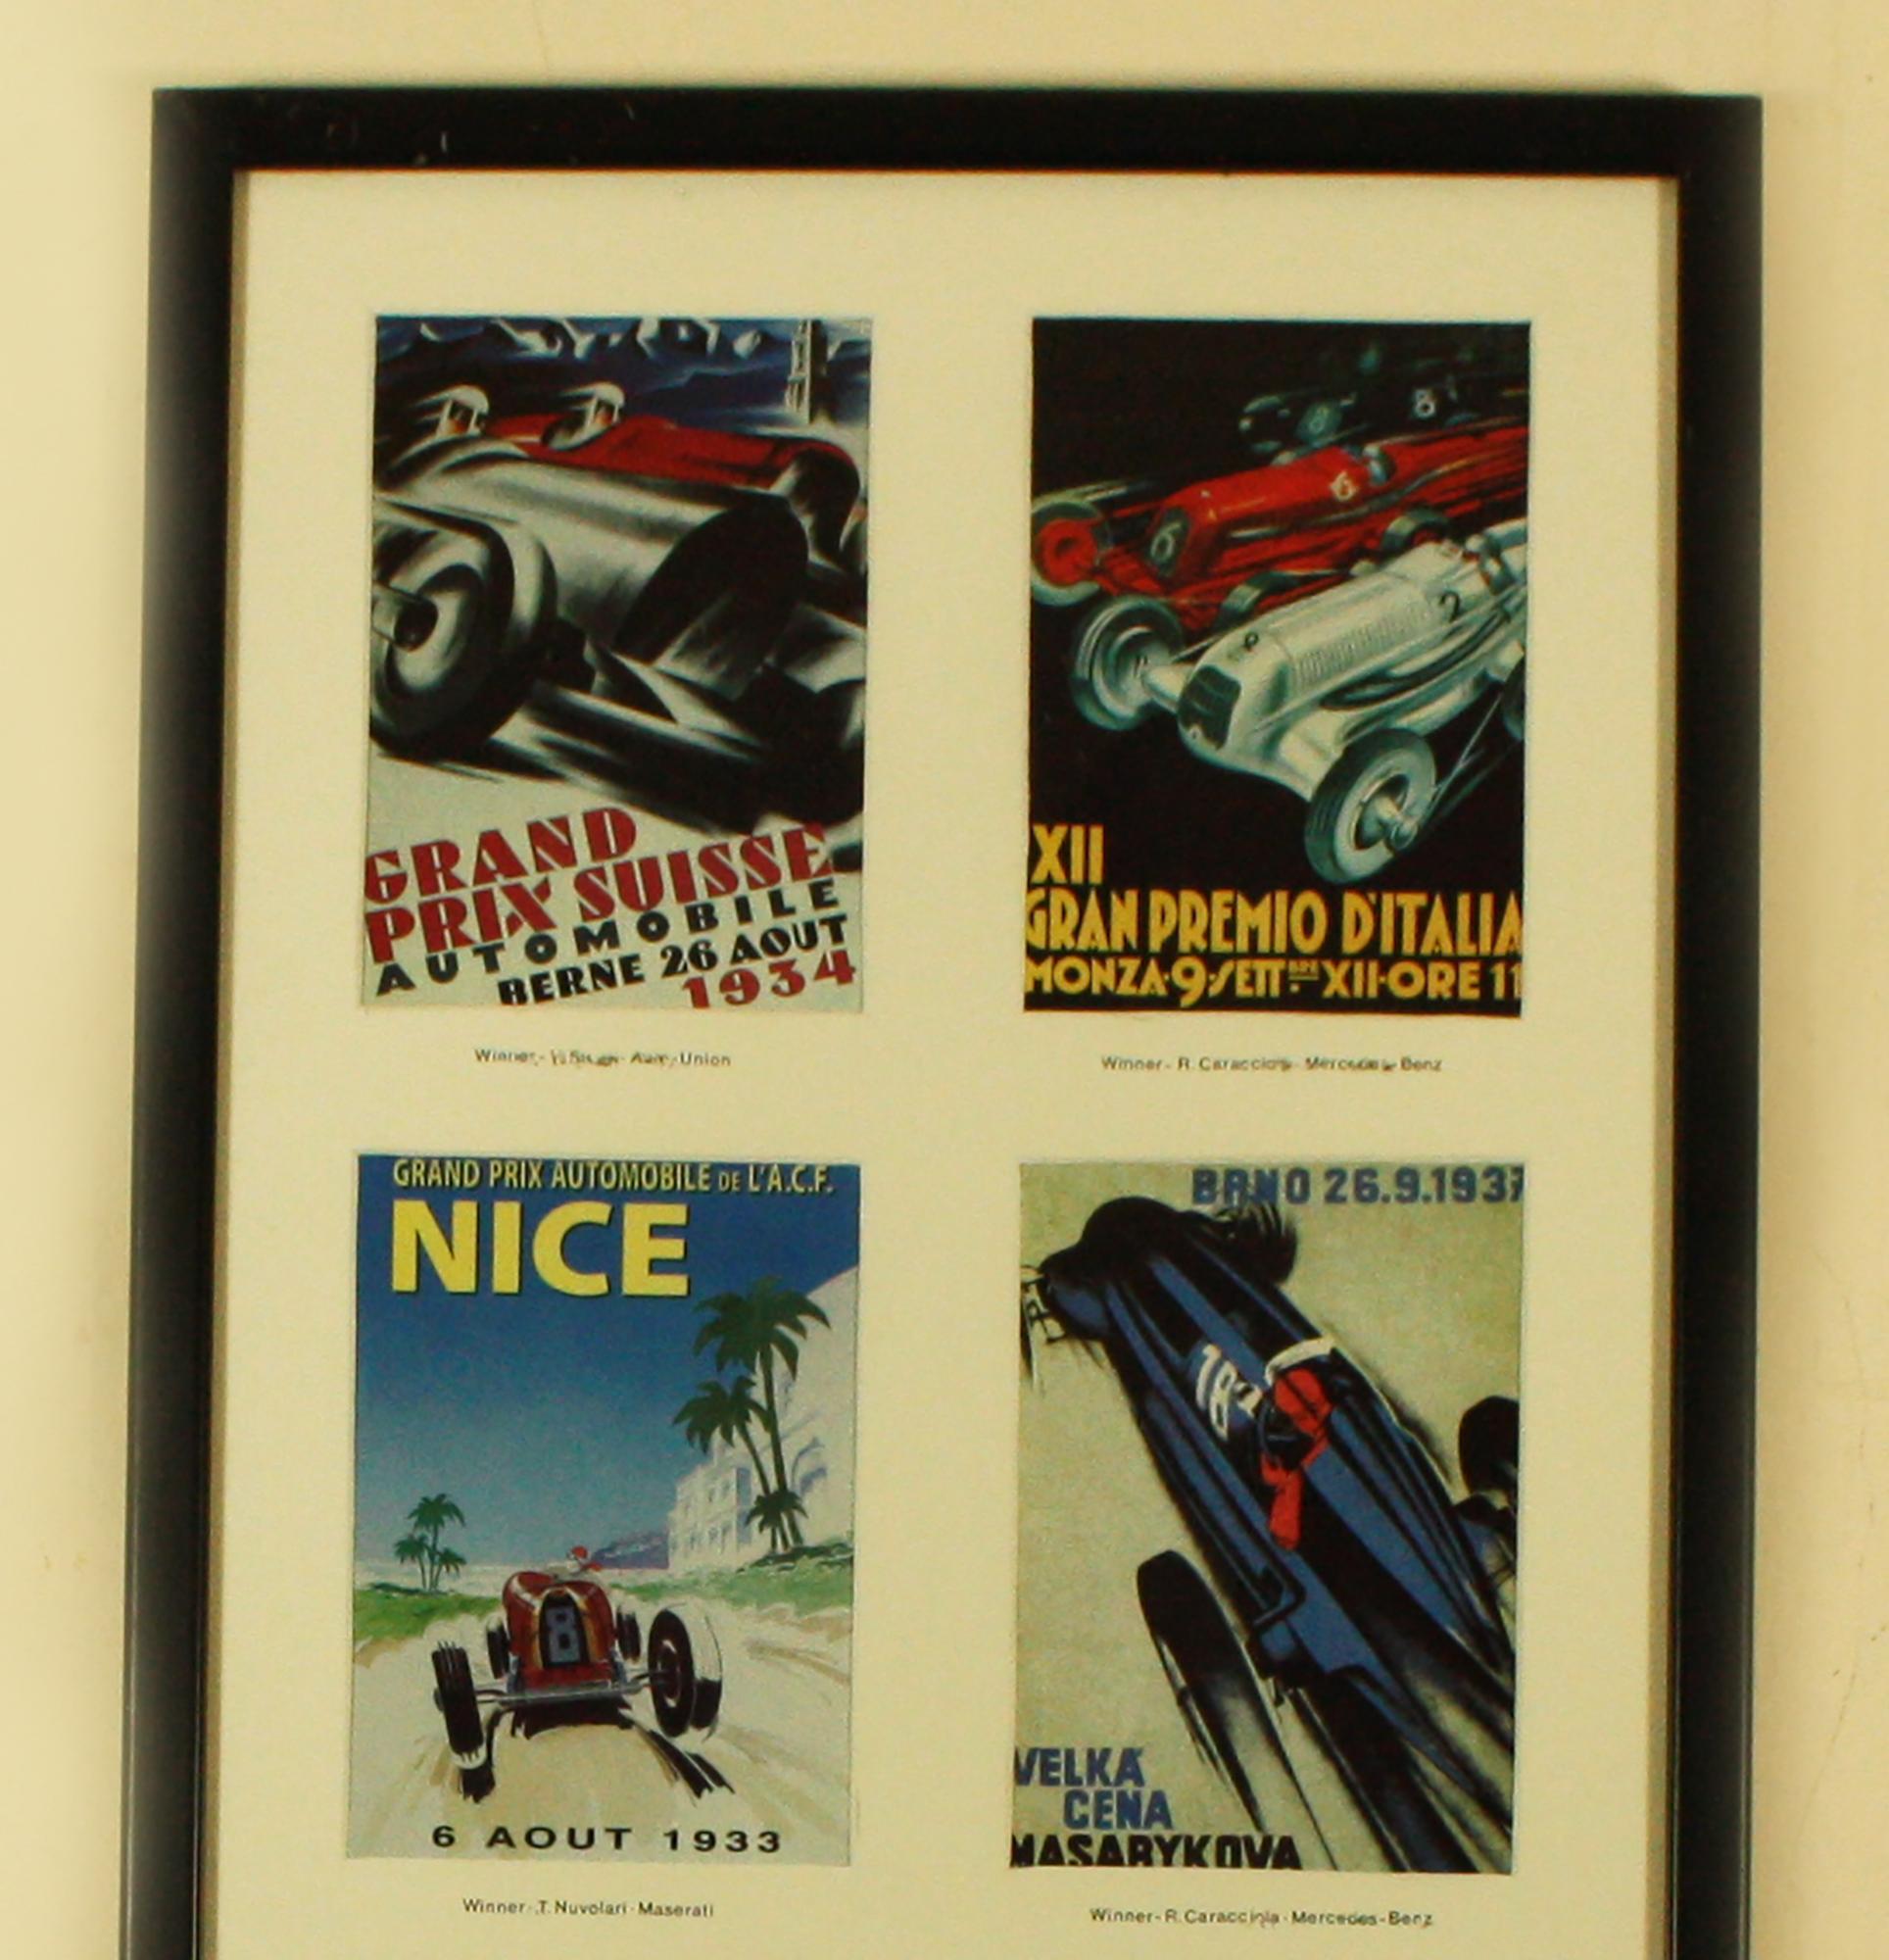 Vintage Monaco Grand Prix postcards - Print by Unknown